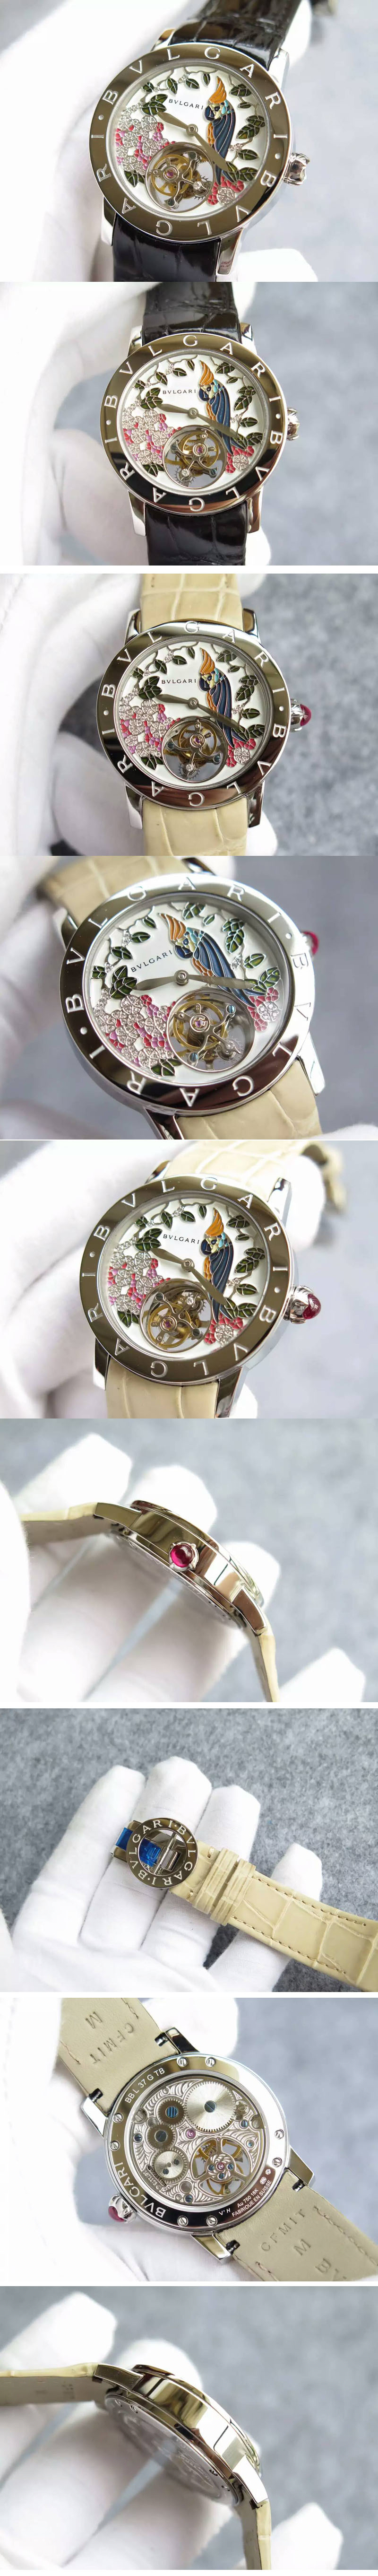 Replica Bvlgari Watches